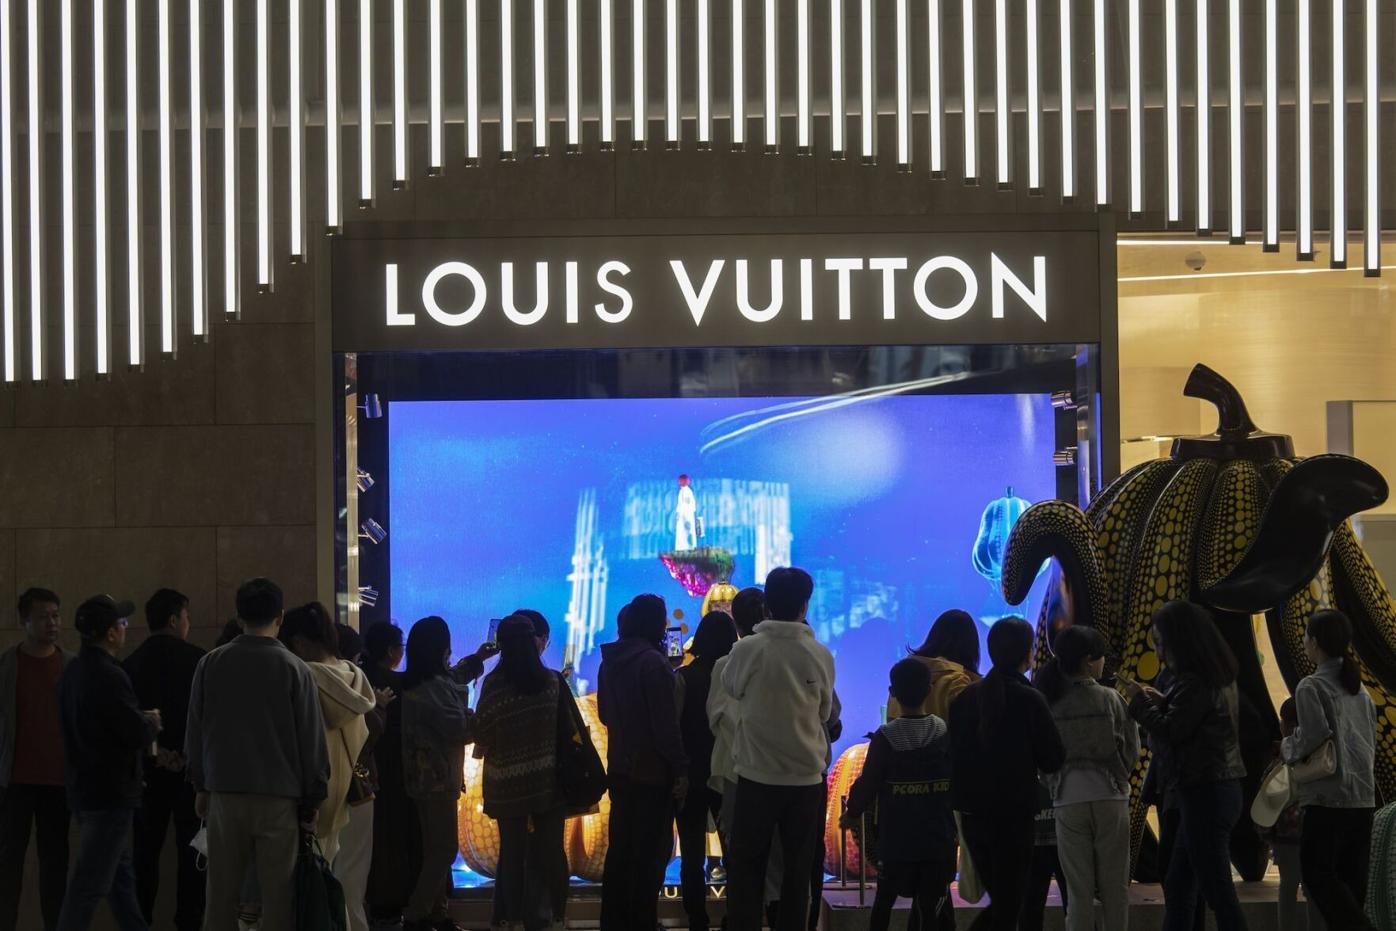 Business Leader of the Week: Meet Bernard Arnault, world's richest person &  Louis Vuitton CEO - International Finance